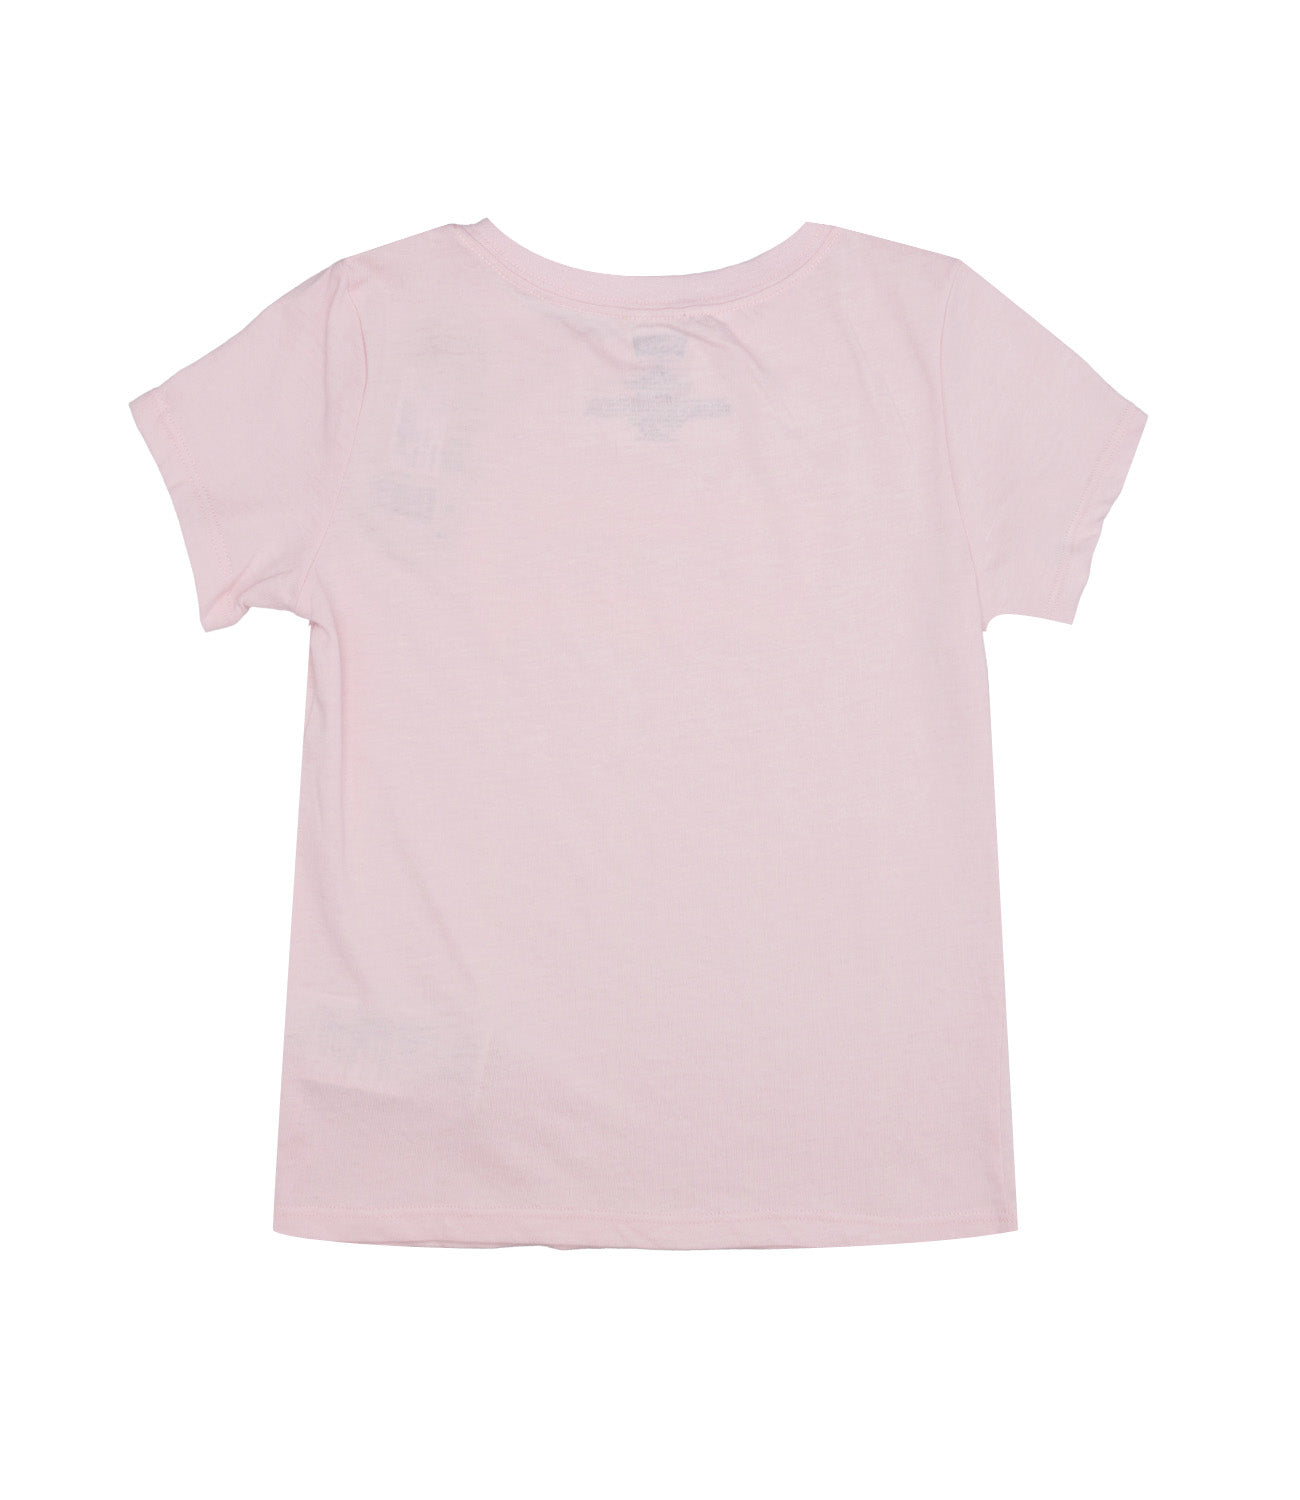 Levis Kids | T-Shirt Pink